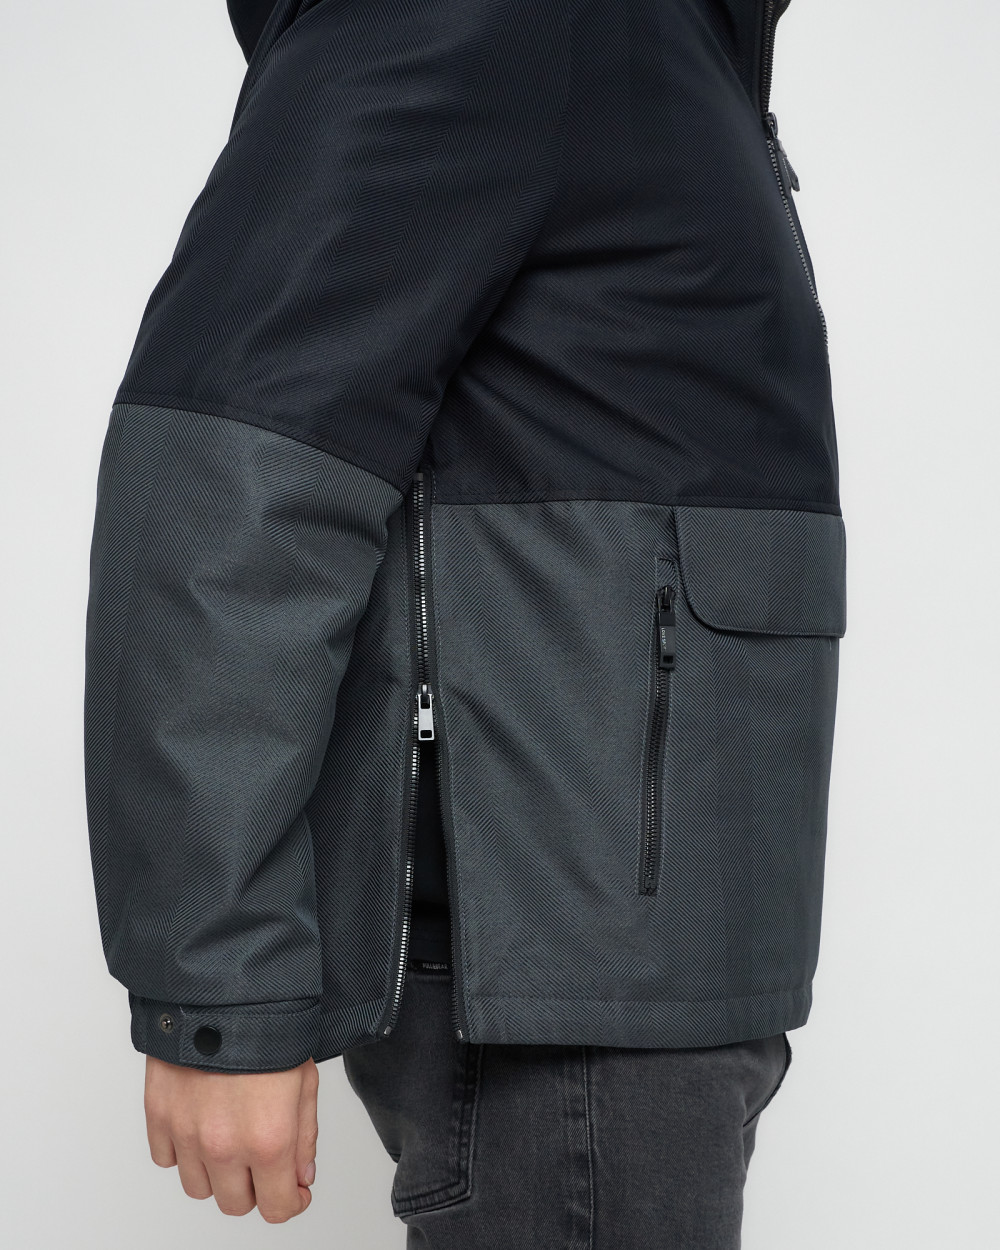 Купить куртку анорак спортивную мужскую оптом от производителя недорого в Москве 3307TS 1